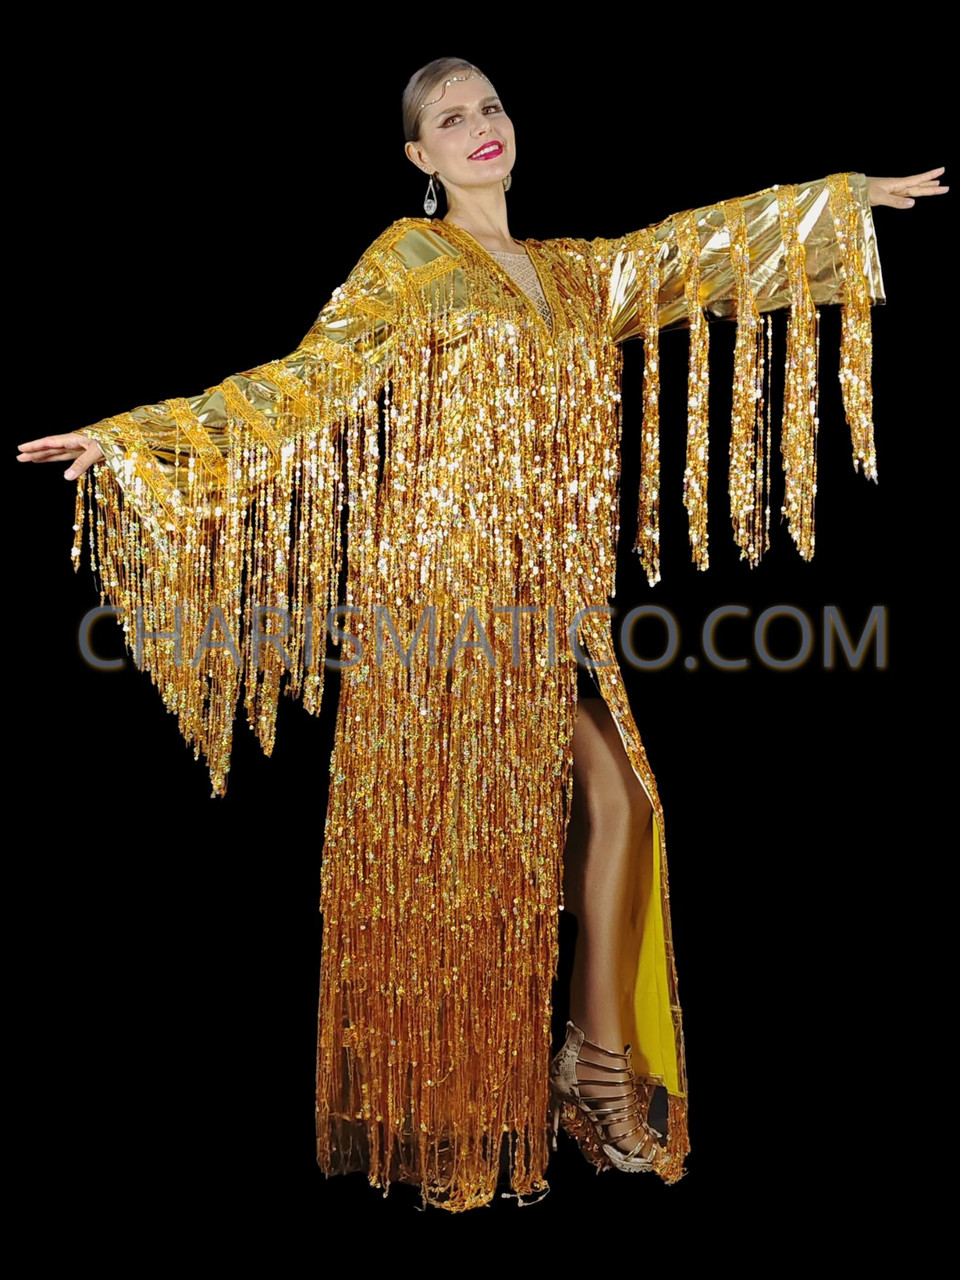 Gold Fringe Concert Star Costume, Pop Star Gold Fringe Costume